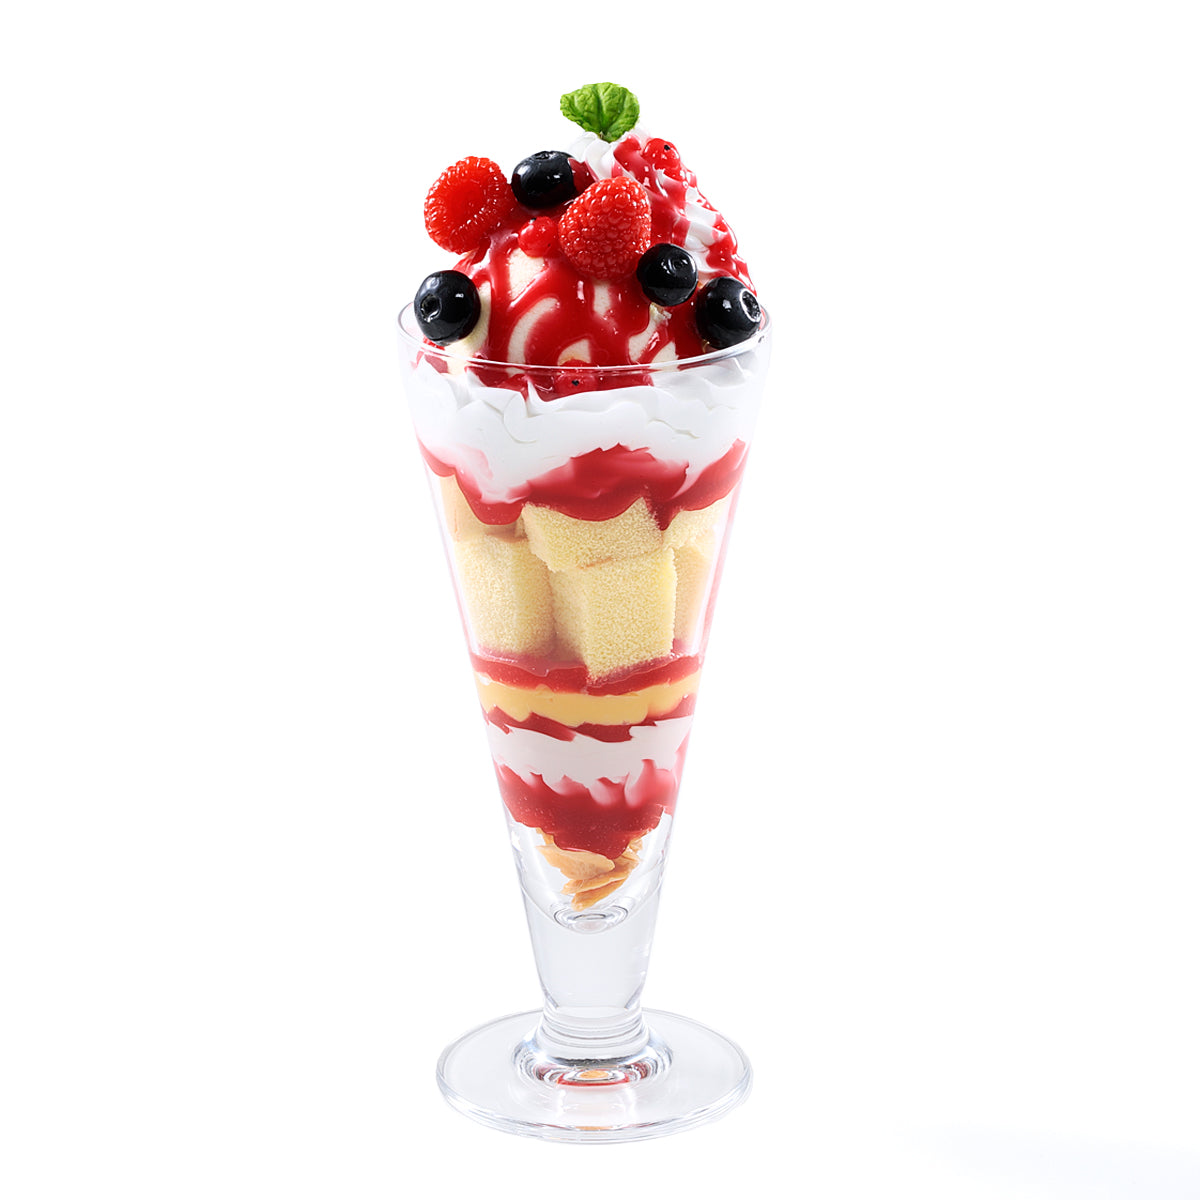 オリジナル食品サンプル「ベリーパフェ」の商品画像です。(英語表記)Berry parfait